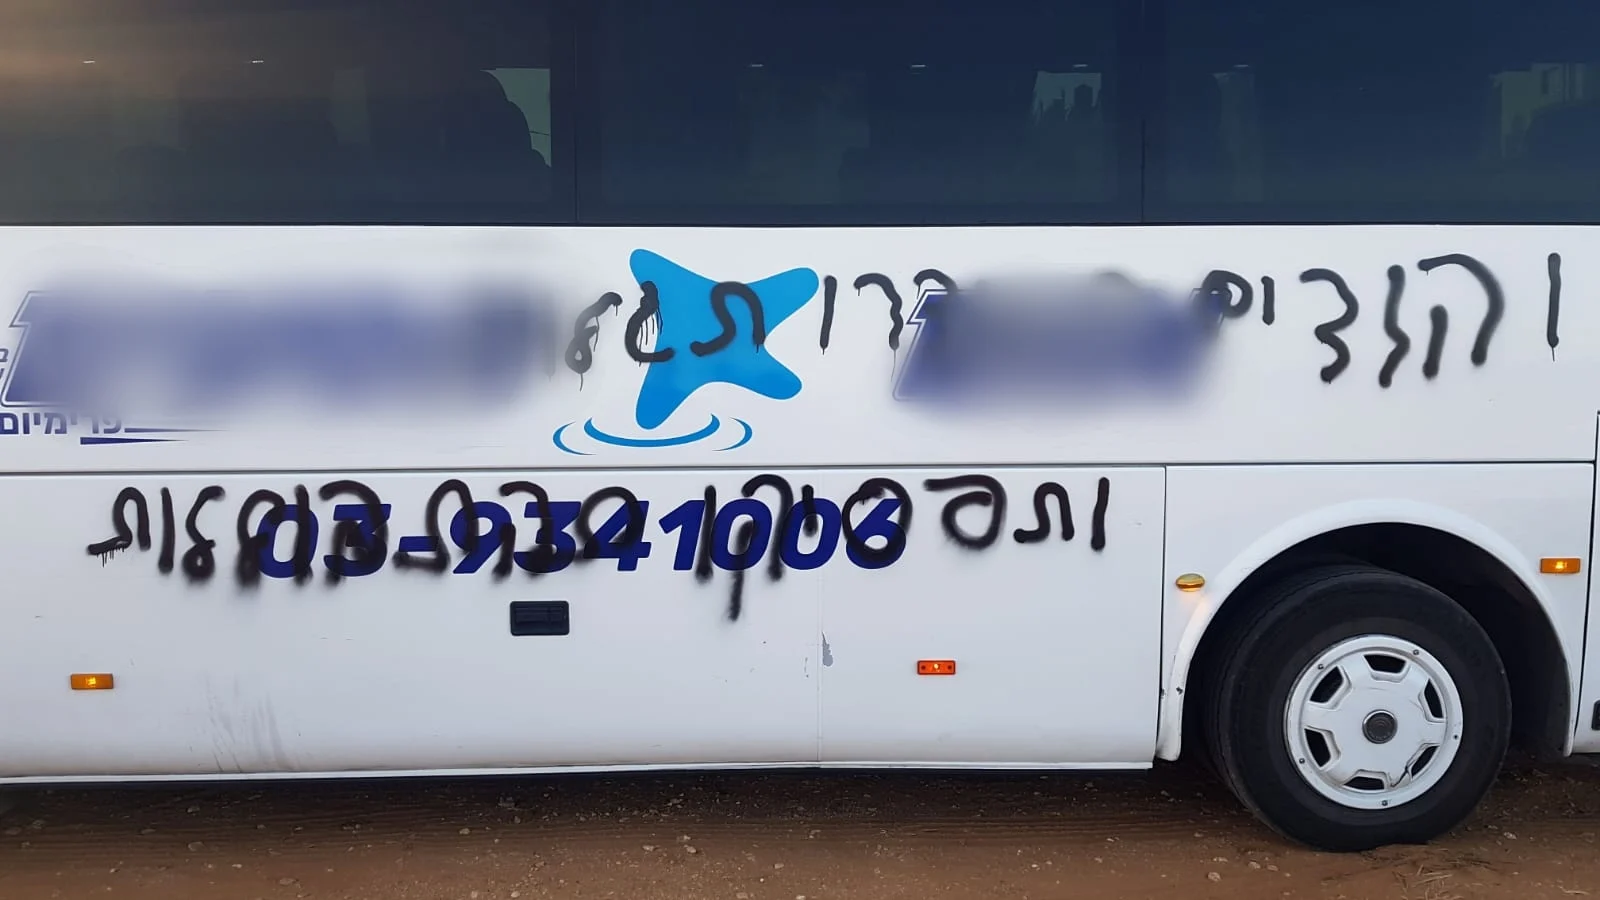 אוטובוס עם כתובת מרוססת בעברית נגד התבוללות